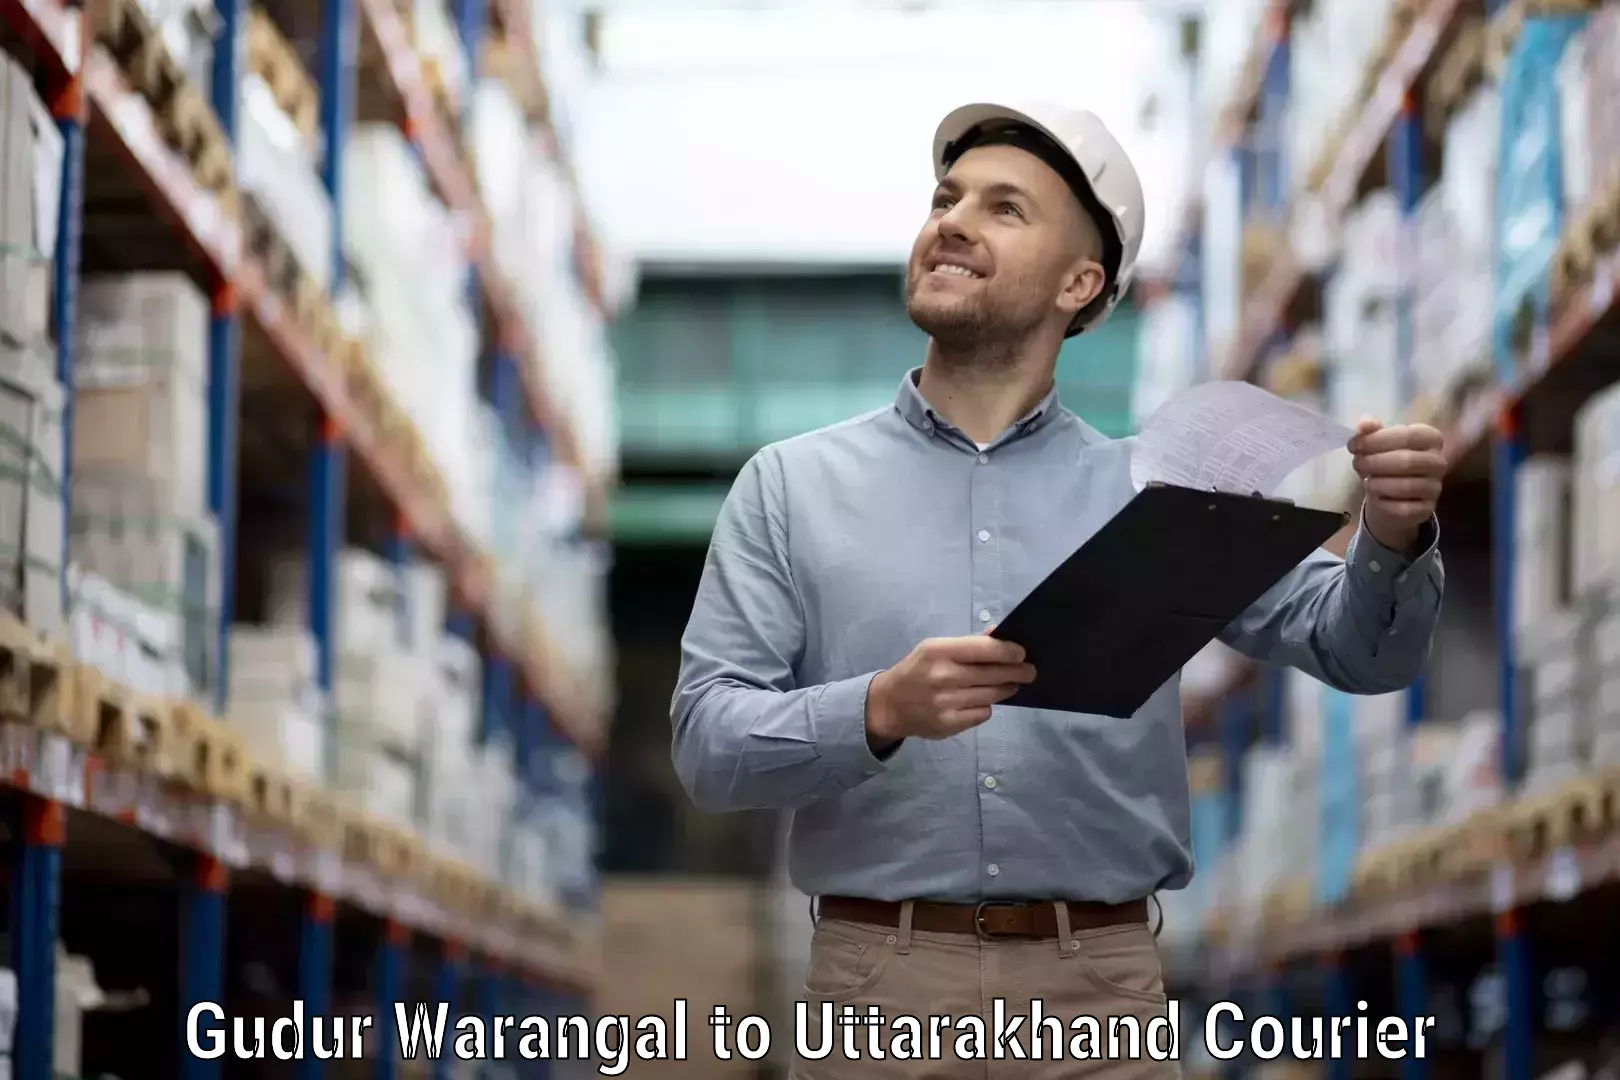 State-of-the-art courier technology Gudur Warangal to Kotdwara